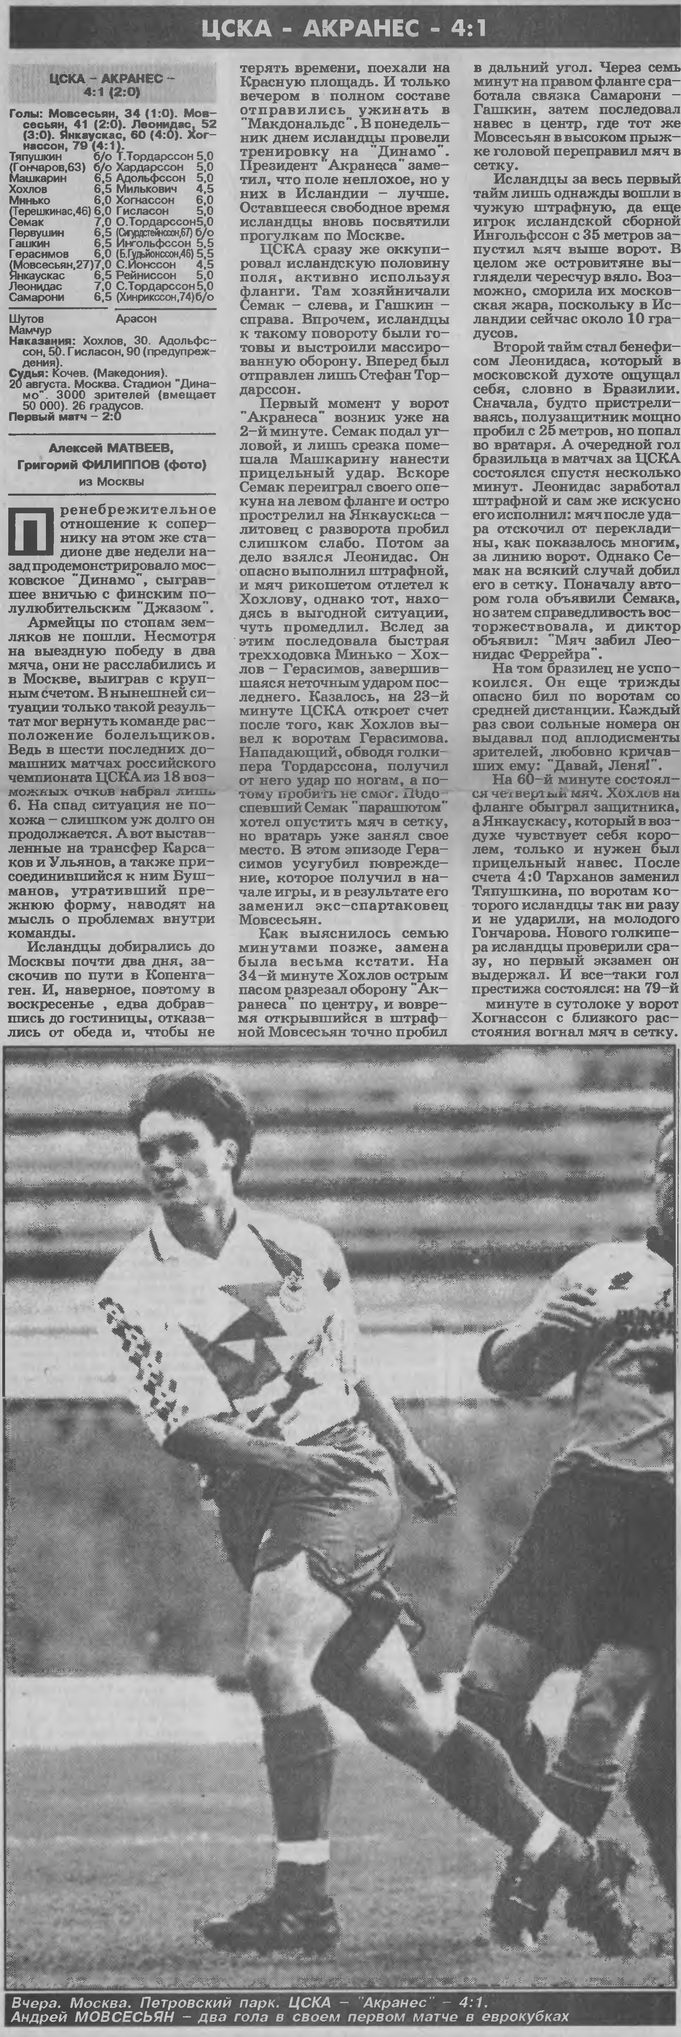 1996-08-20.CSKA-Akranes.2